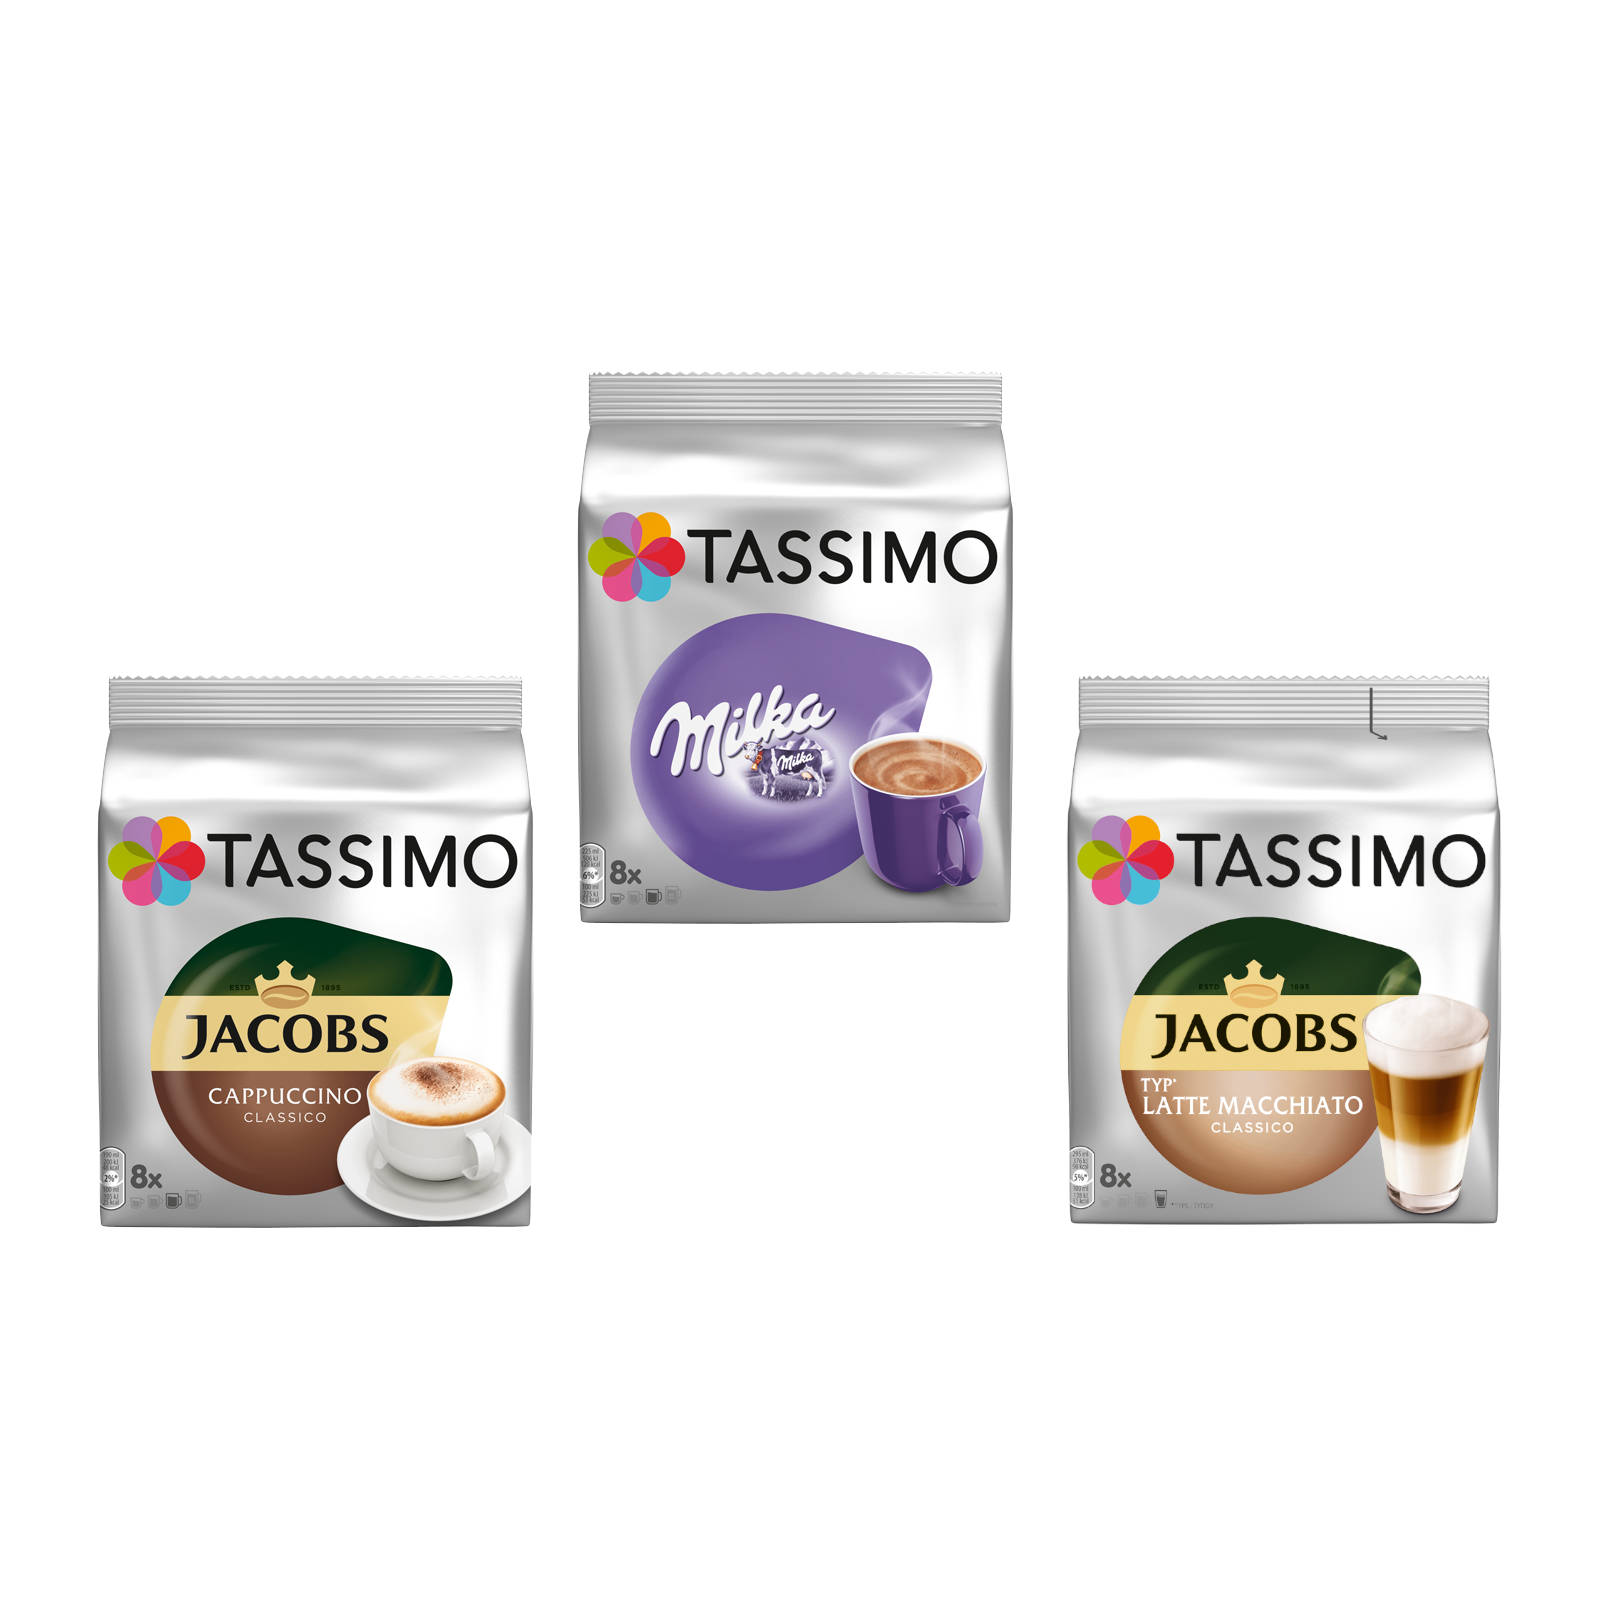 TASSIMO Creamy (T-Disc Milka Macchiato Collection Kaffeekapseln Classico Latte System)) (Tassimo Cappuccino Maschine